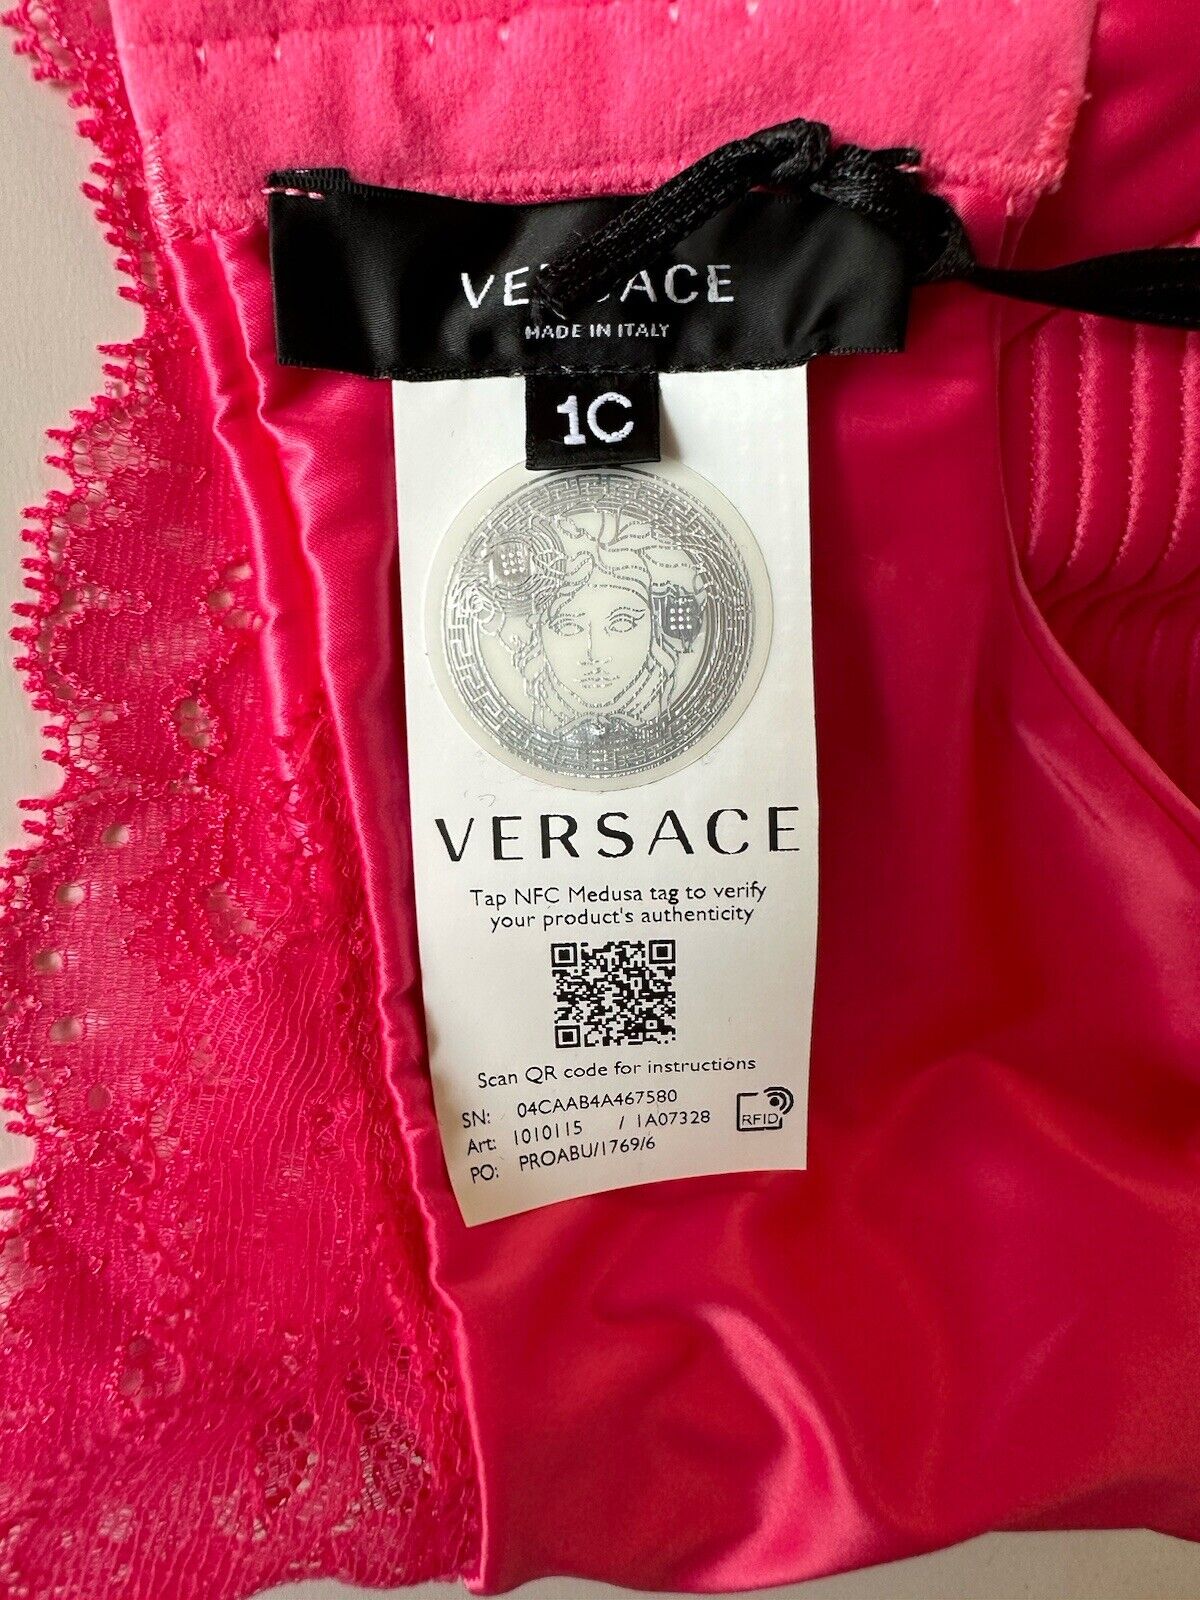 Versace Women’s Greek Key Print Pink Runway Bralette 1C Italy 1010115 NWT $550